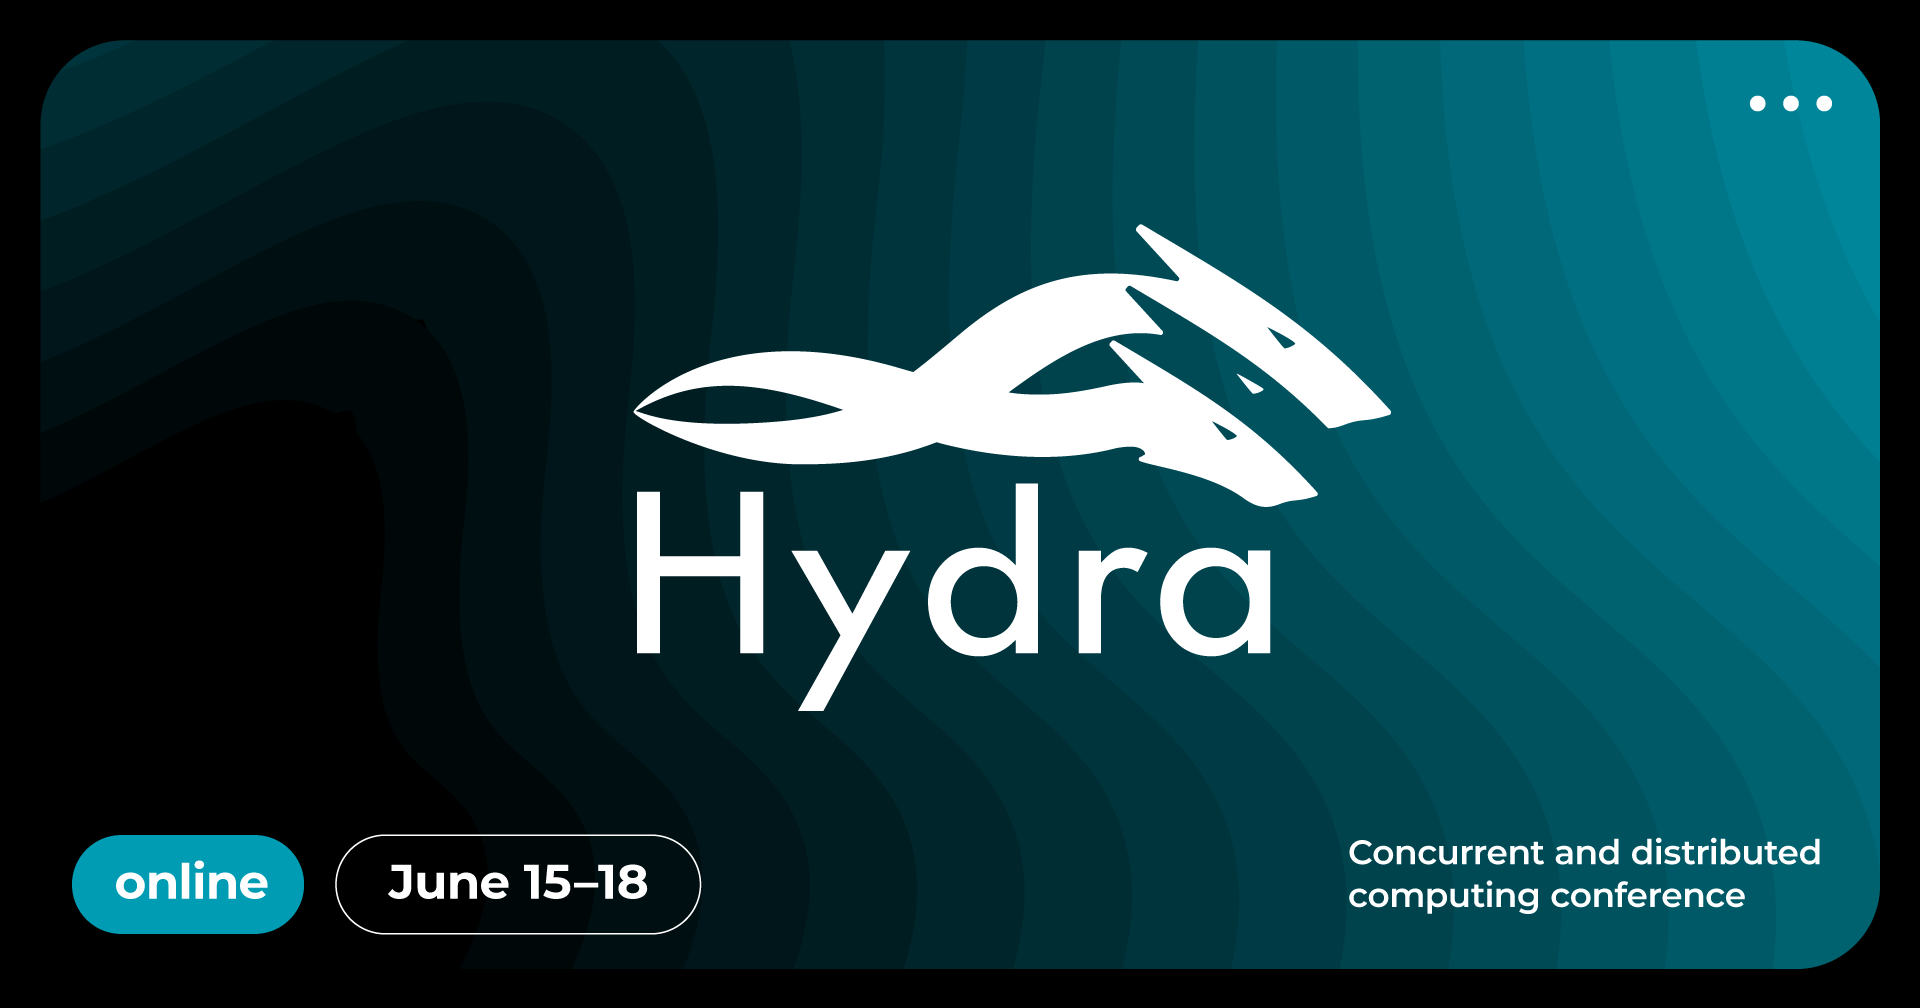 Распределённая конференция о распределённых системах: анонс Hydra 2021